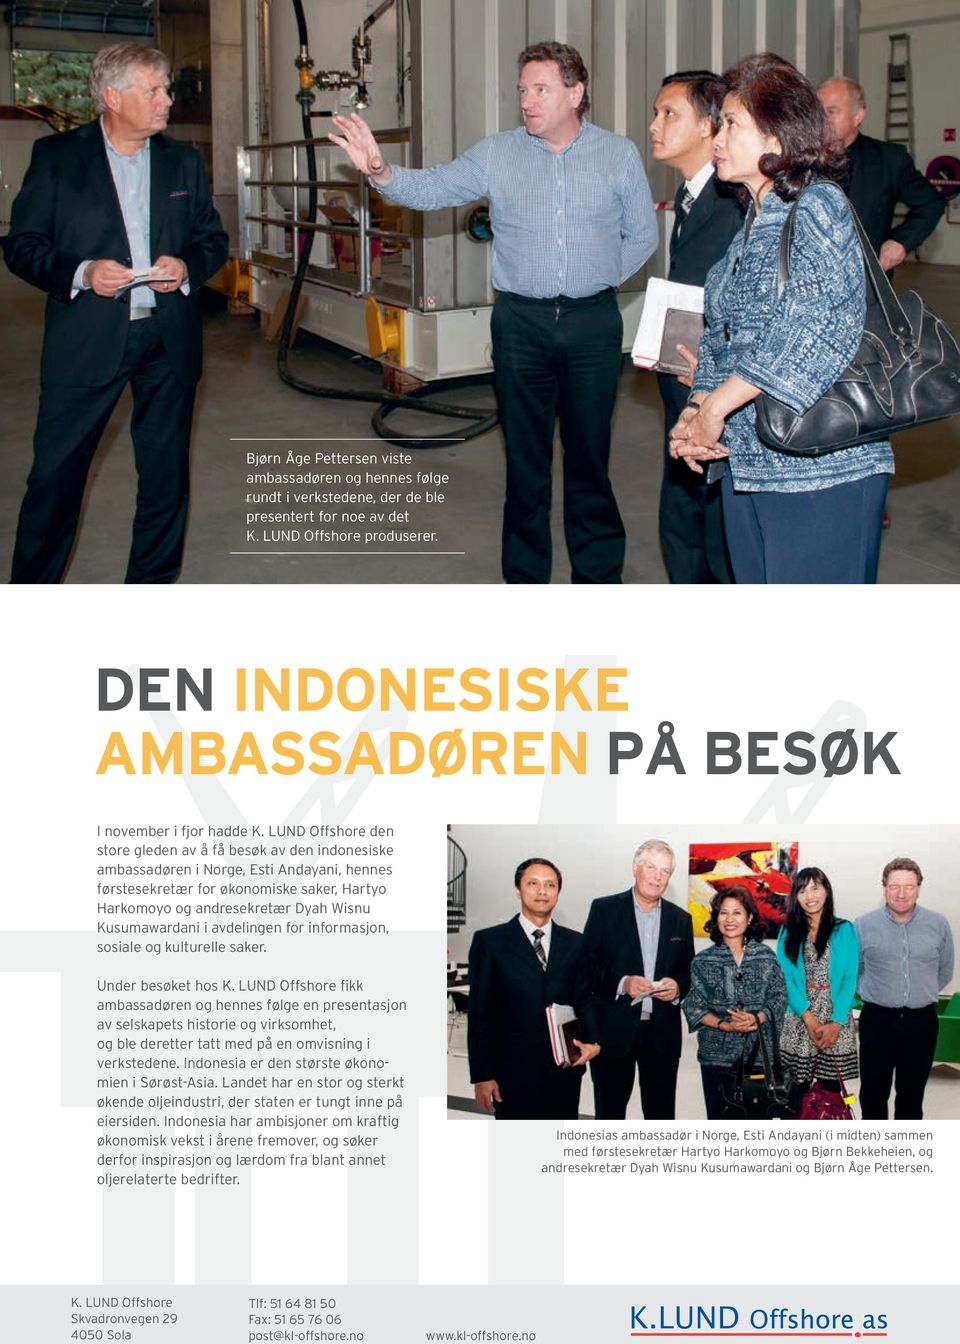 LUND Offshore den store gleden av å få besøk av den indonesiske ambassadøren i Norge, Esti Andayani, hennes førstesekretær for økonomiske saker, Hartyo Harkomoyo og andresekretær Dyah Wisnu